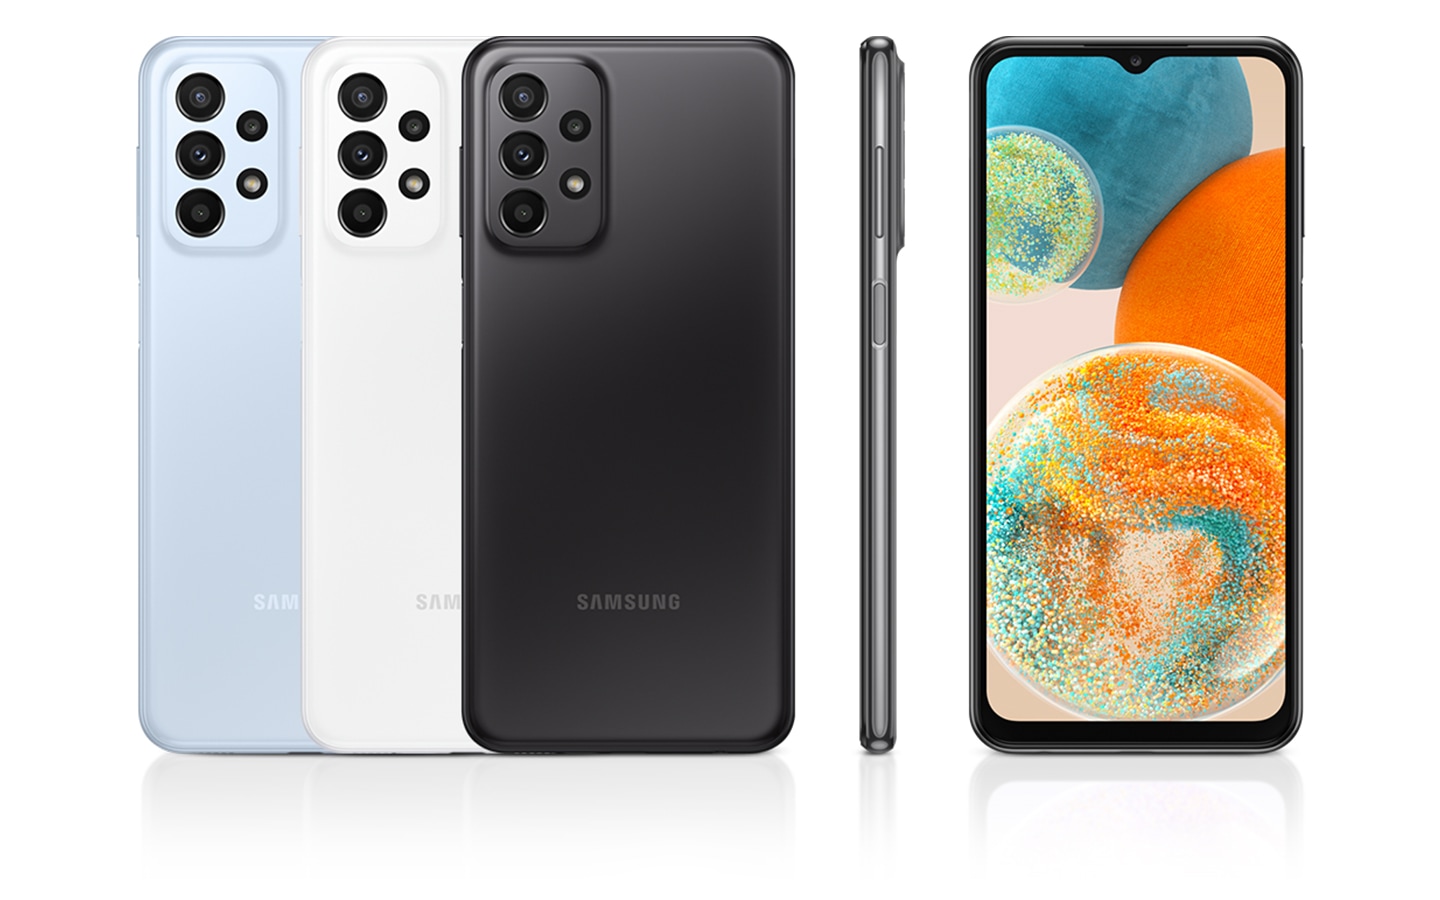 Sechs Galaxy A 23 5G-Smartphones werden gezeigt, damit ihre Farben und ihr Design zu sehen sind. Drei Geräte in den Farben Light Blue, White und Black sind von hinten zu sehen. Ein Smartphone wird von vorne und von der rechten Seite gezeigt.